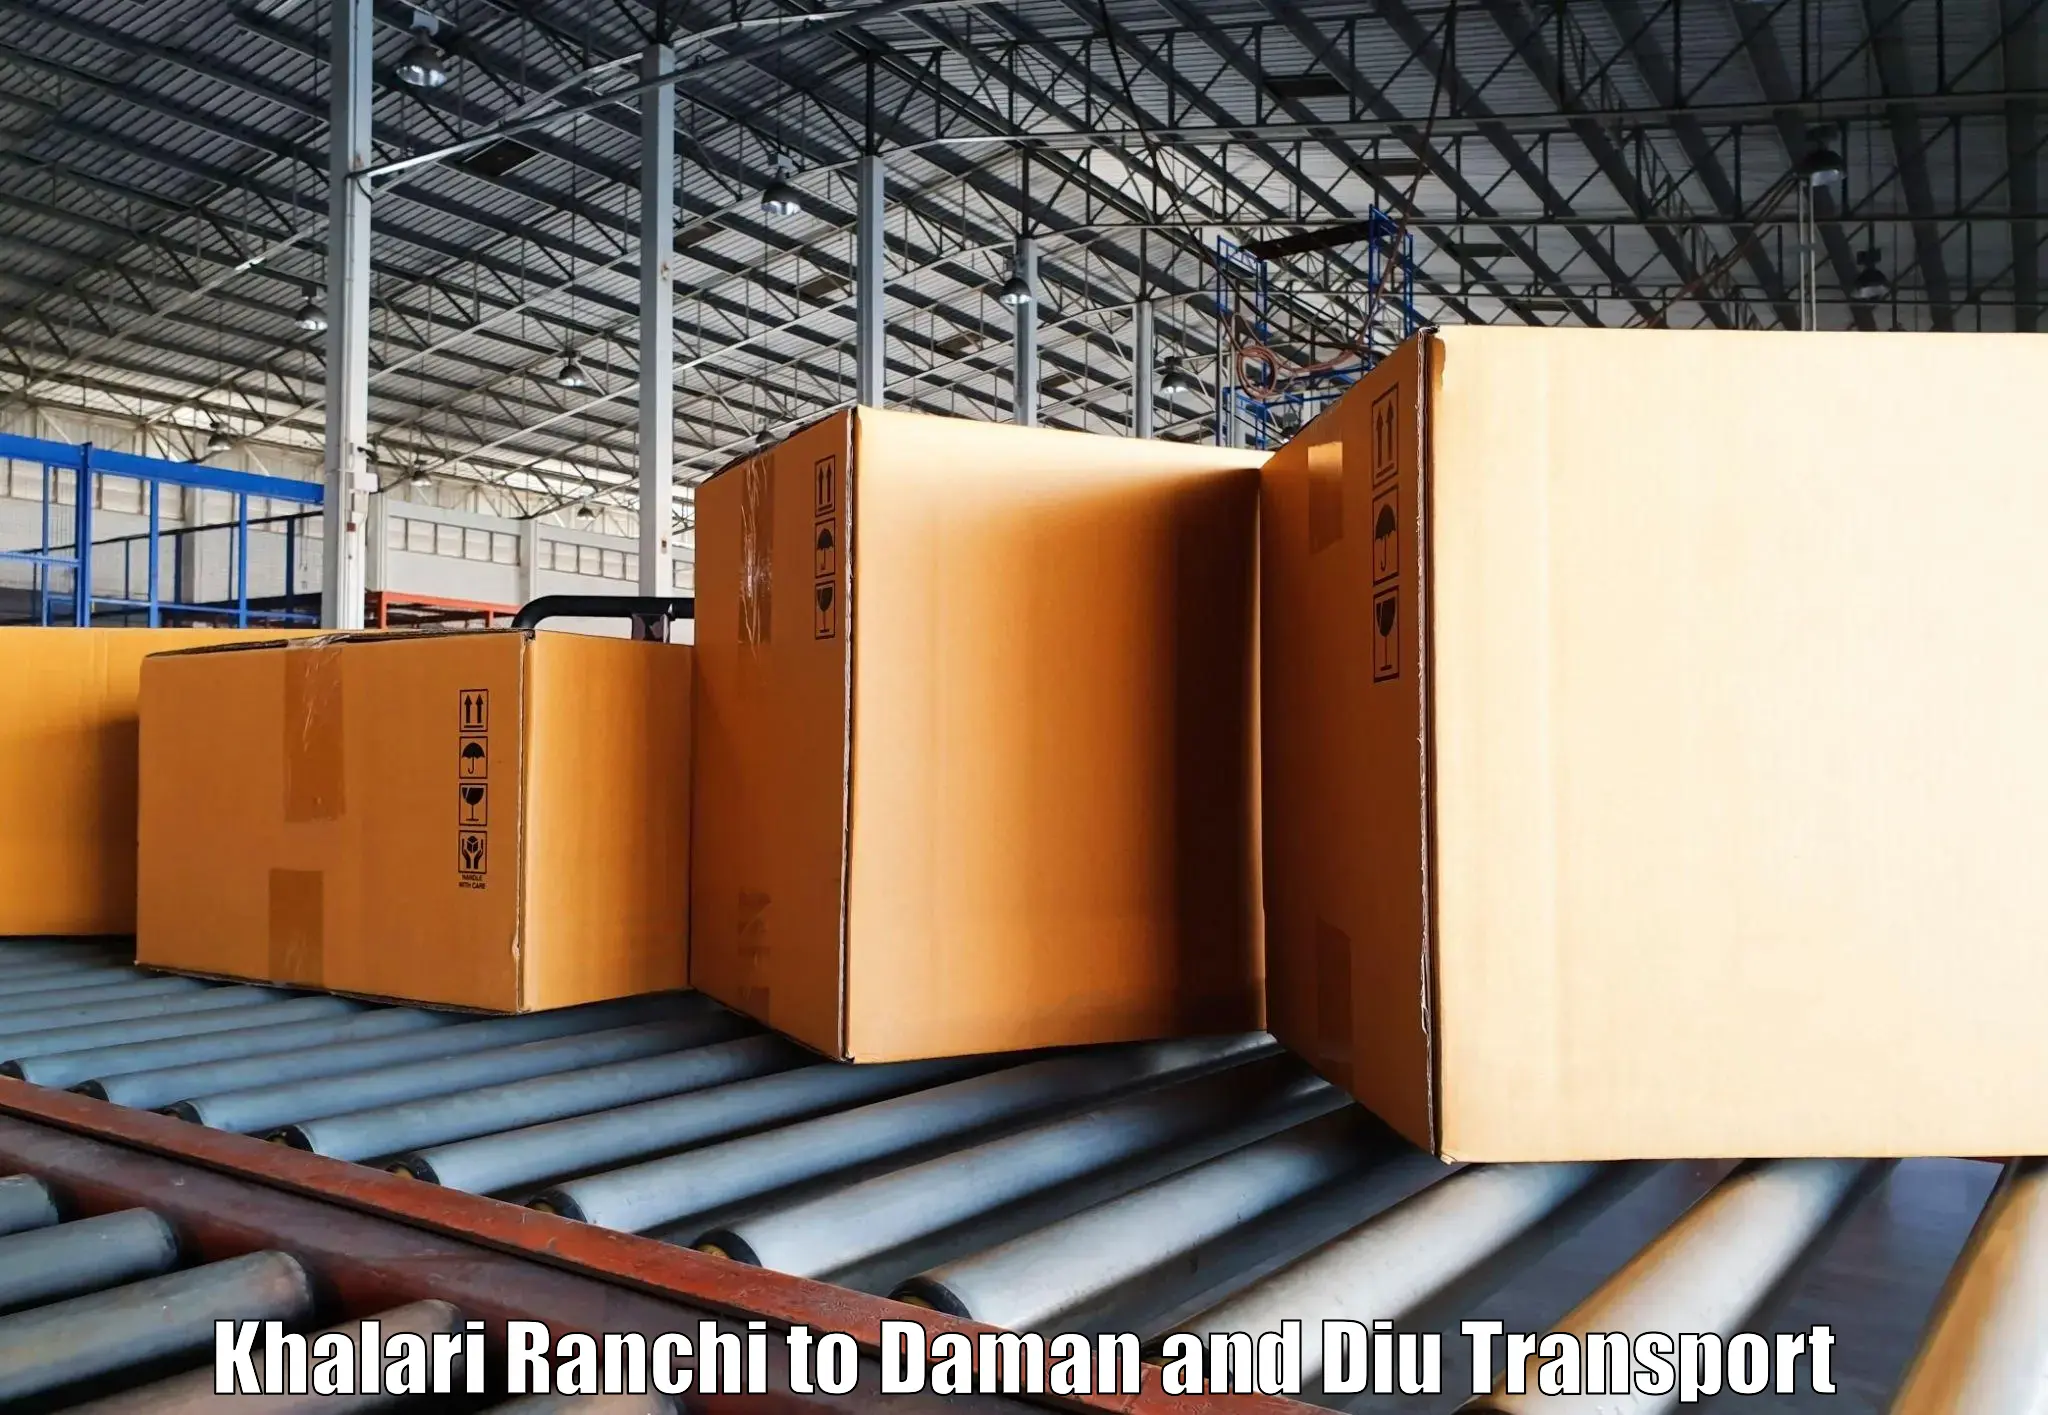 Land transport services Khalari Ranchi to Daman